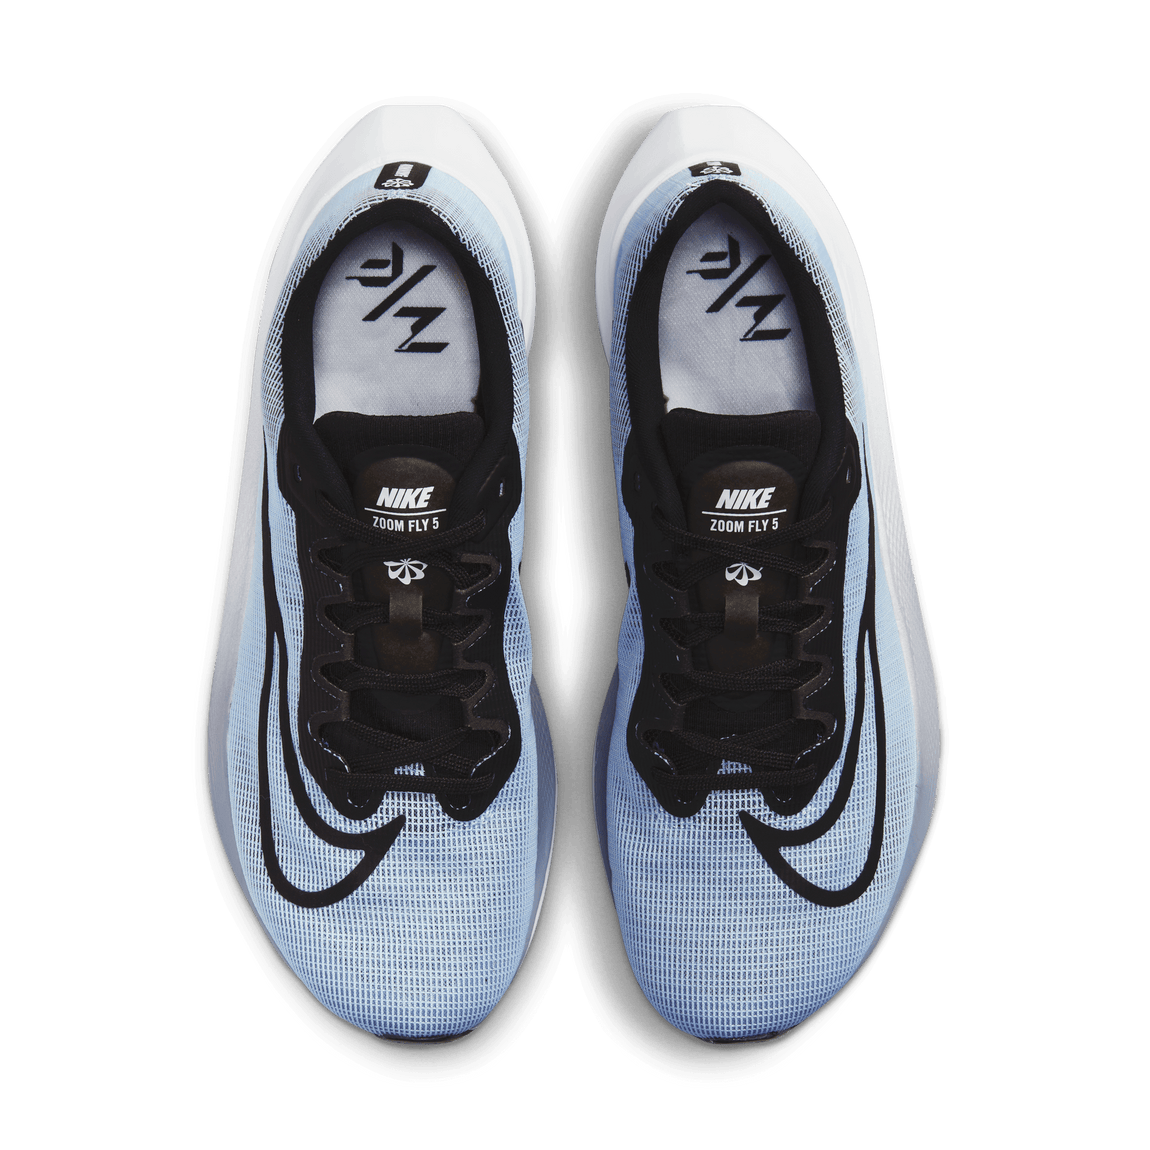 Nike Zoom Fly 5 (Cobalt Bliss/Black/White-Ashen Slate) - Nike Zoom Fly 5 (Cobalt Bliss/Black/White-Ashen Slate) - 